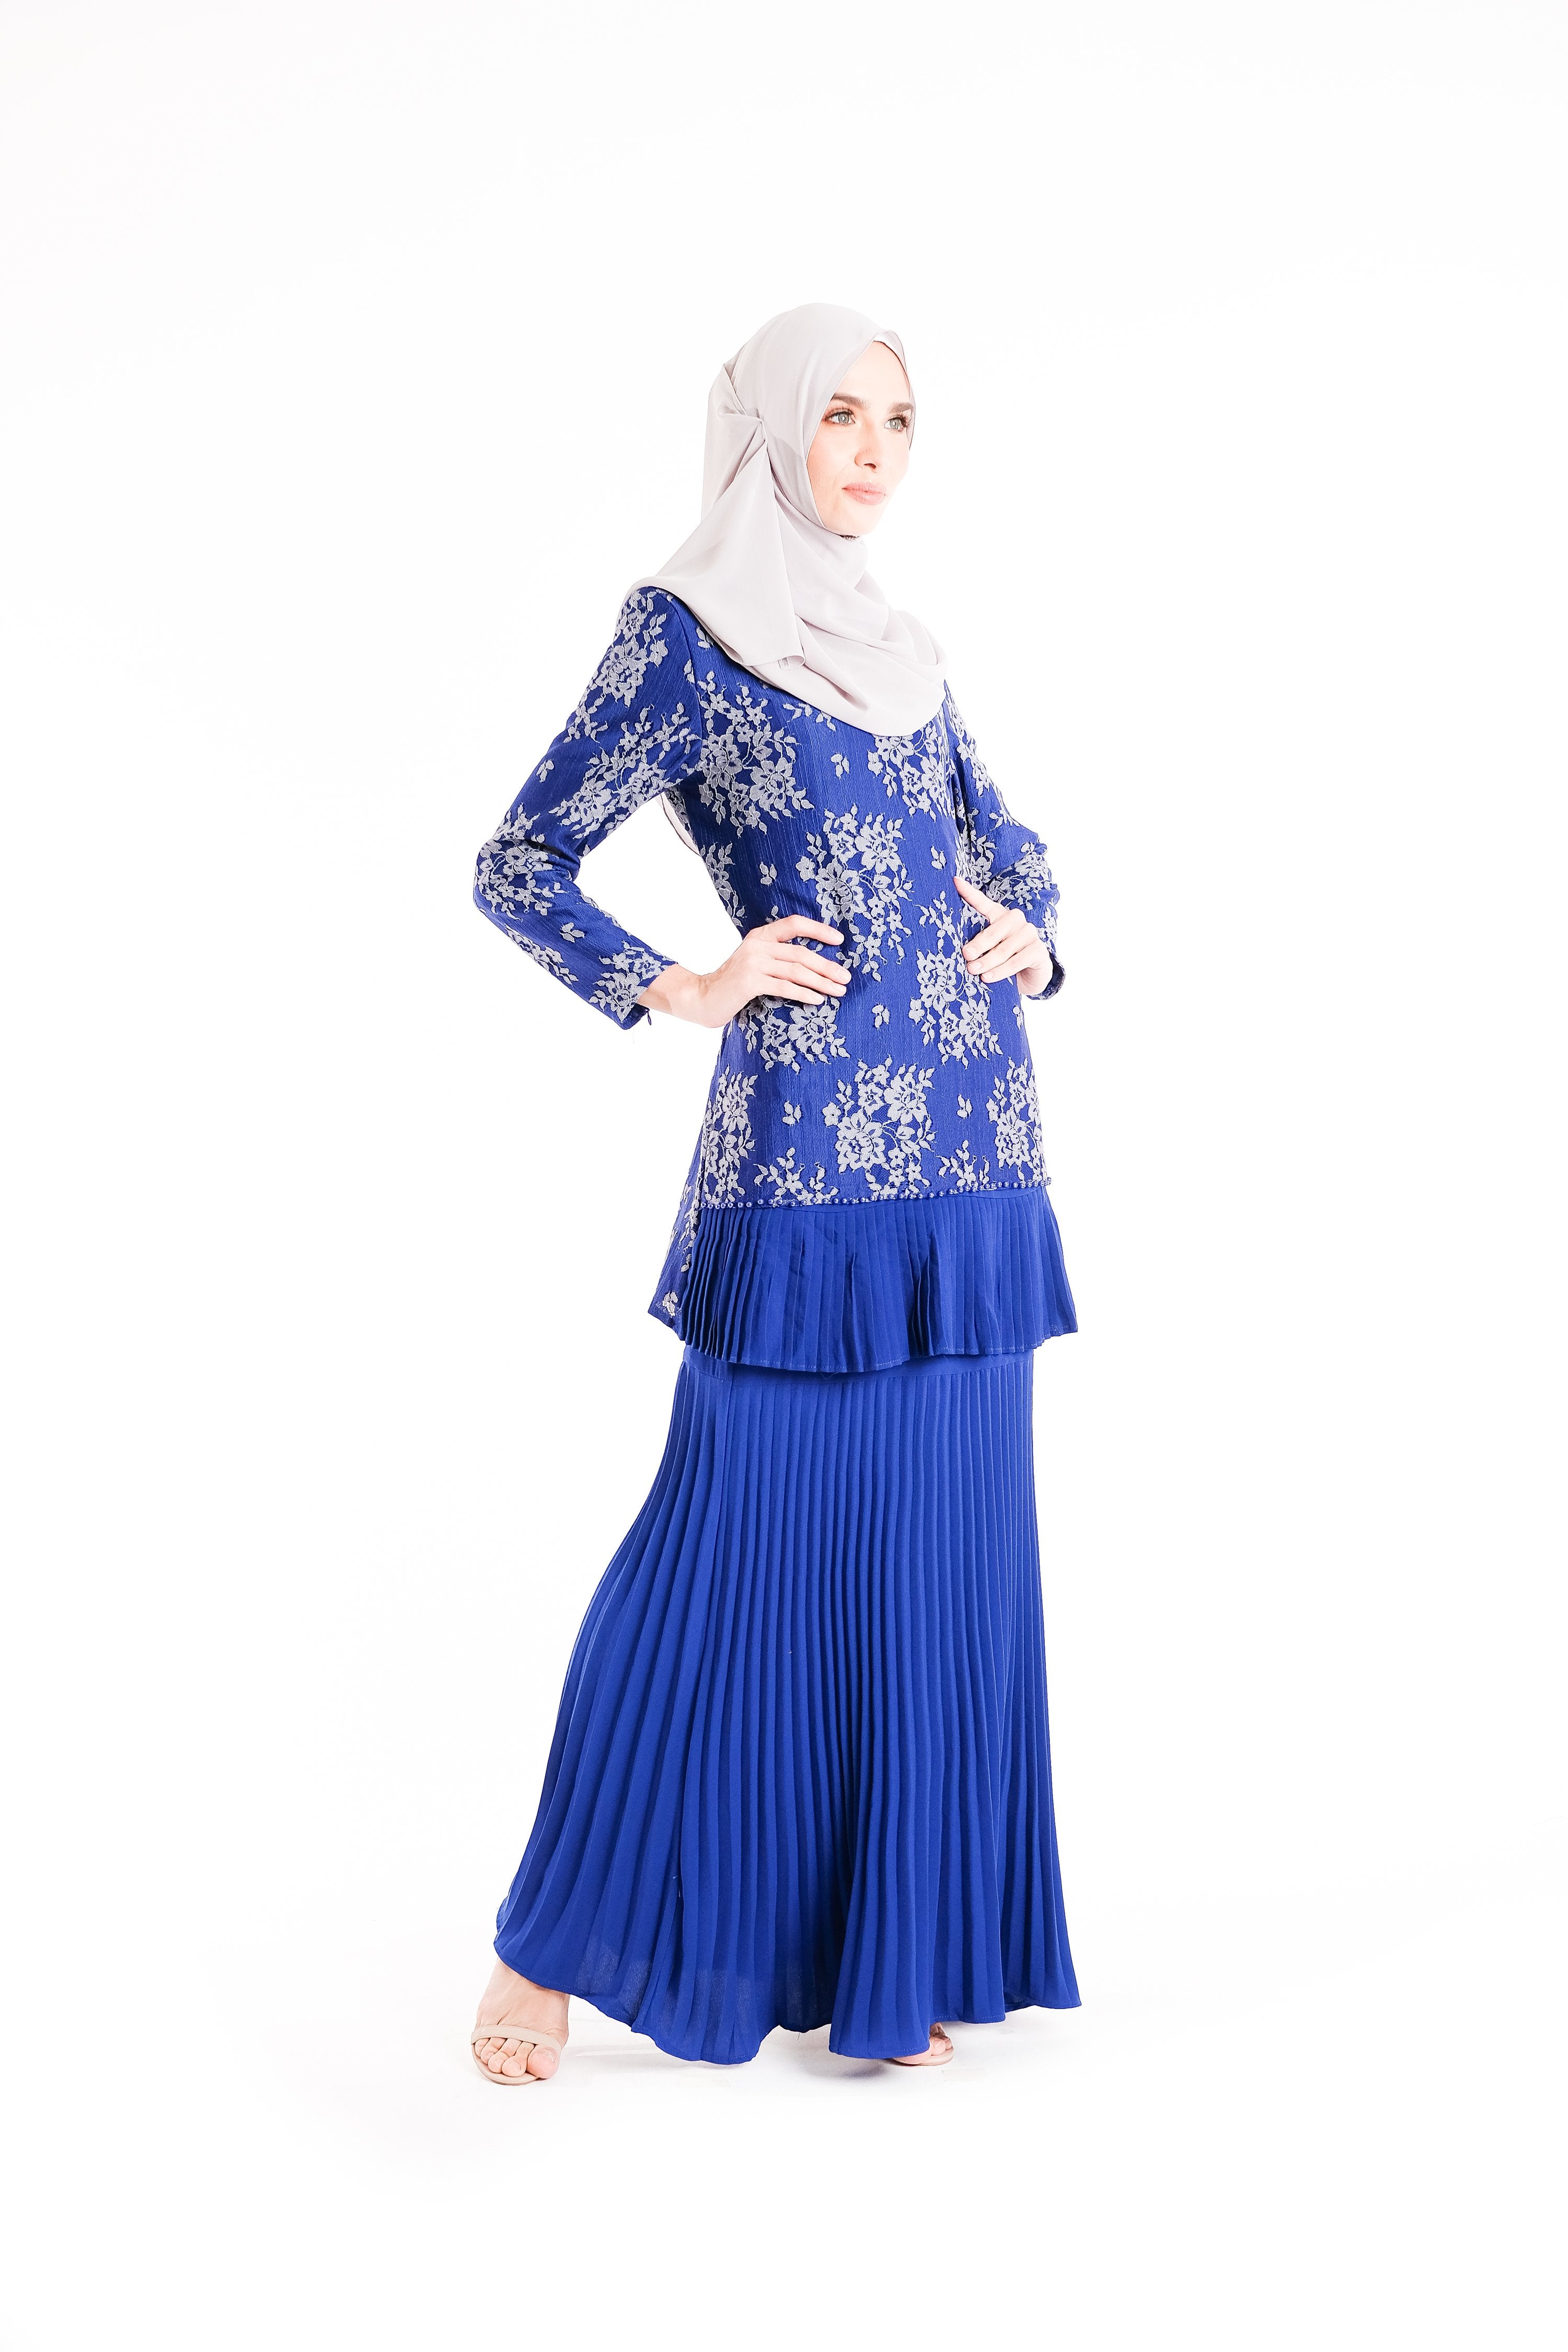 baju kurung moden royal blue 2018